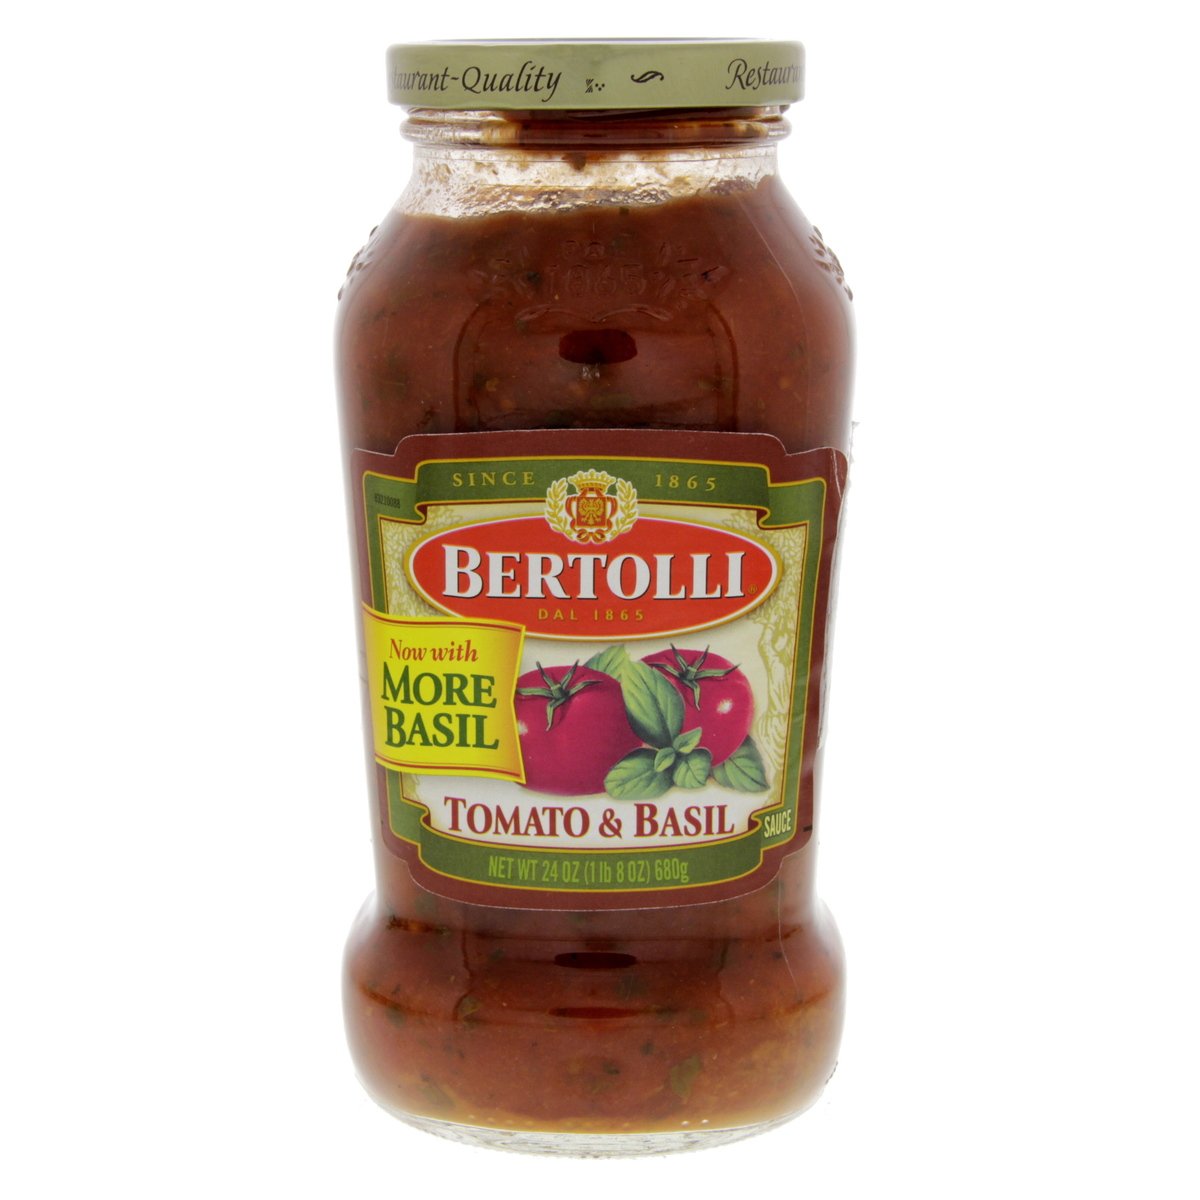 اشتري قم بشراء برتولي - صلصة الطماطم والريحان ، 680 جم Online at Best Price من الموقع - من لولو هايبر ماركت Cooking Sauce في السعودية